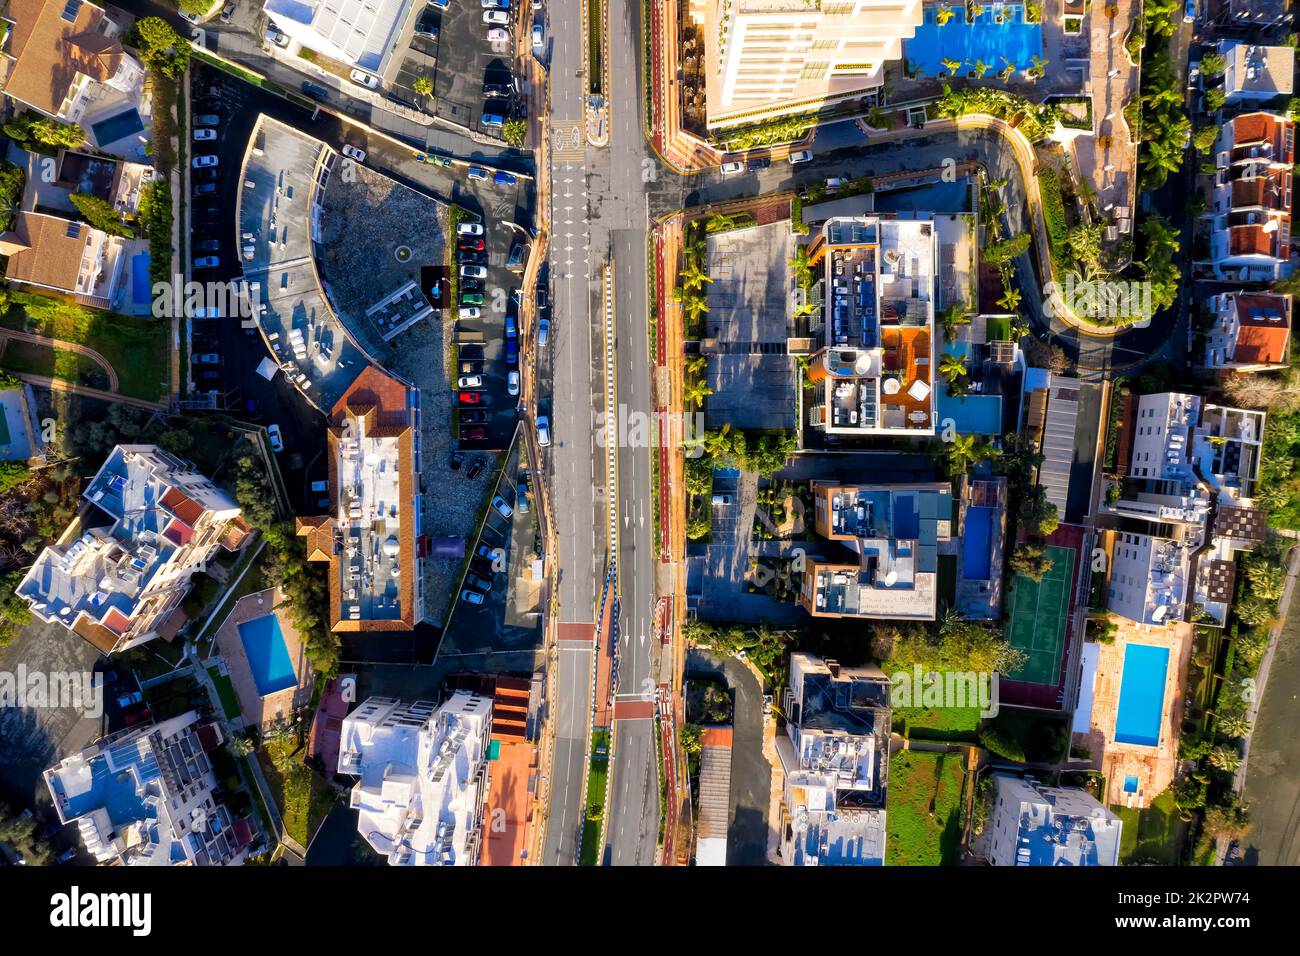 Unvergleichlicher Blick auf die Stadt mit Straßen, Häusern, Gebäuden und Parkplätzen. Limassol, Zypern Stockfoto